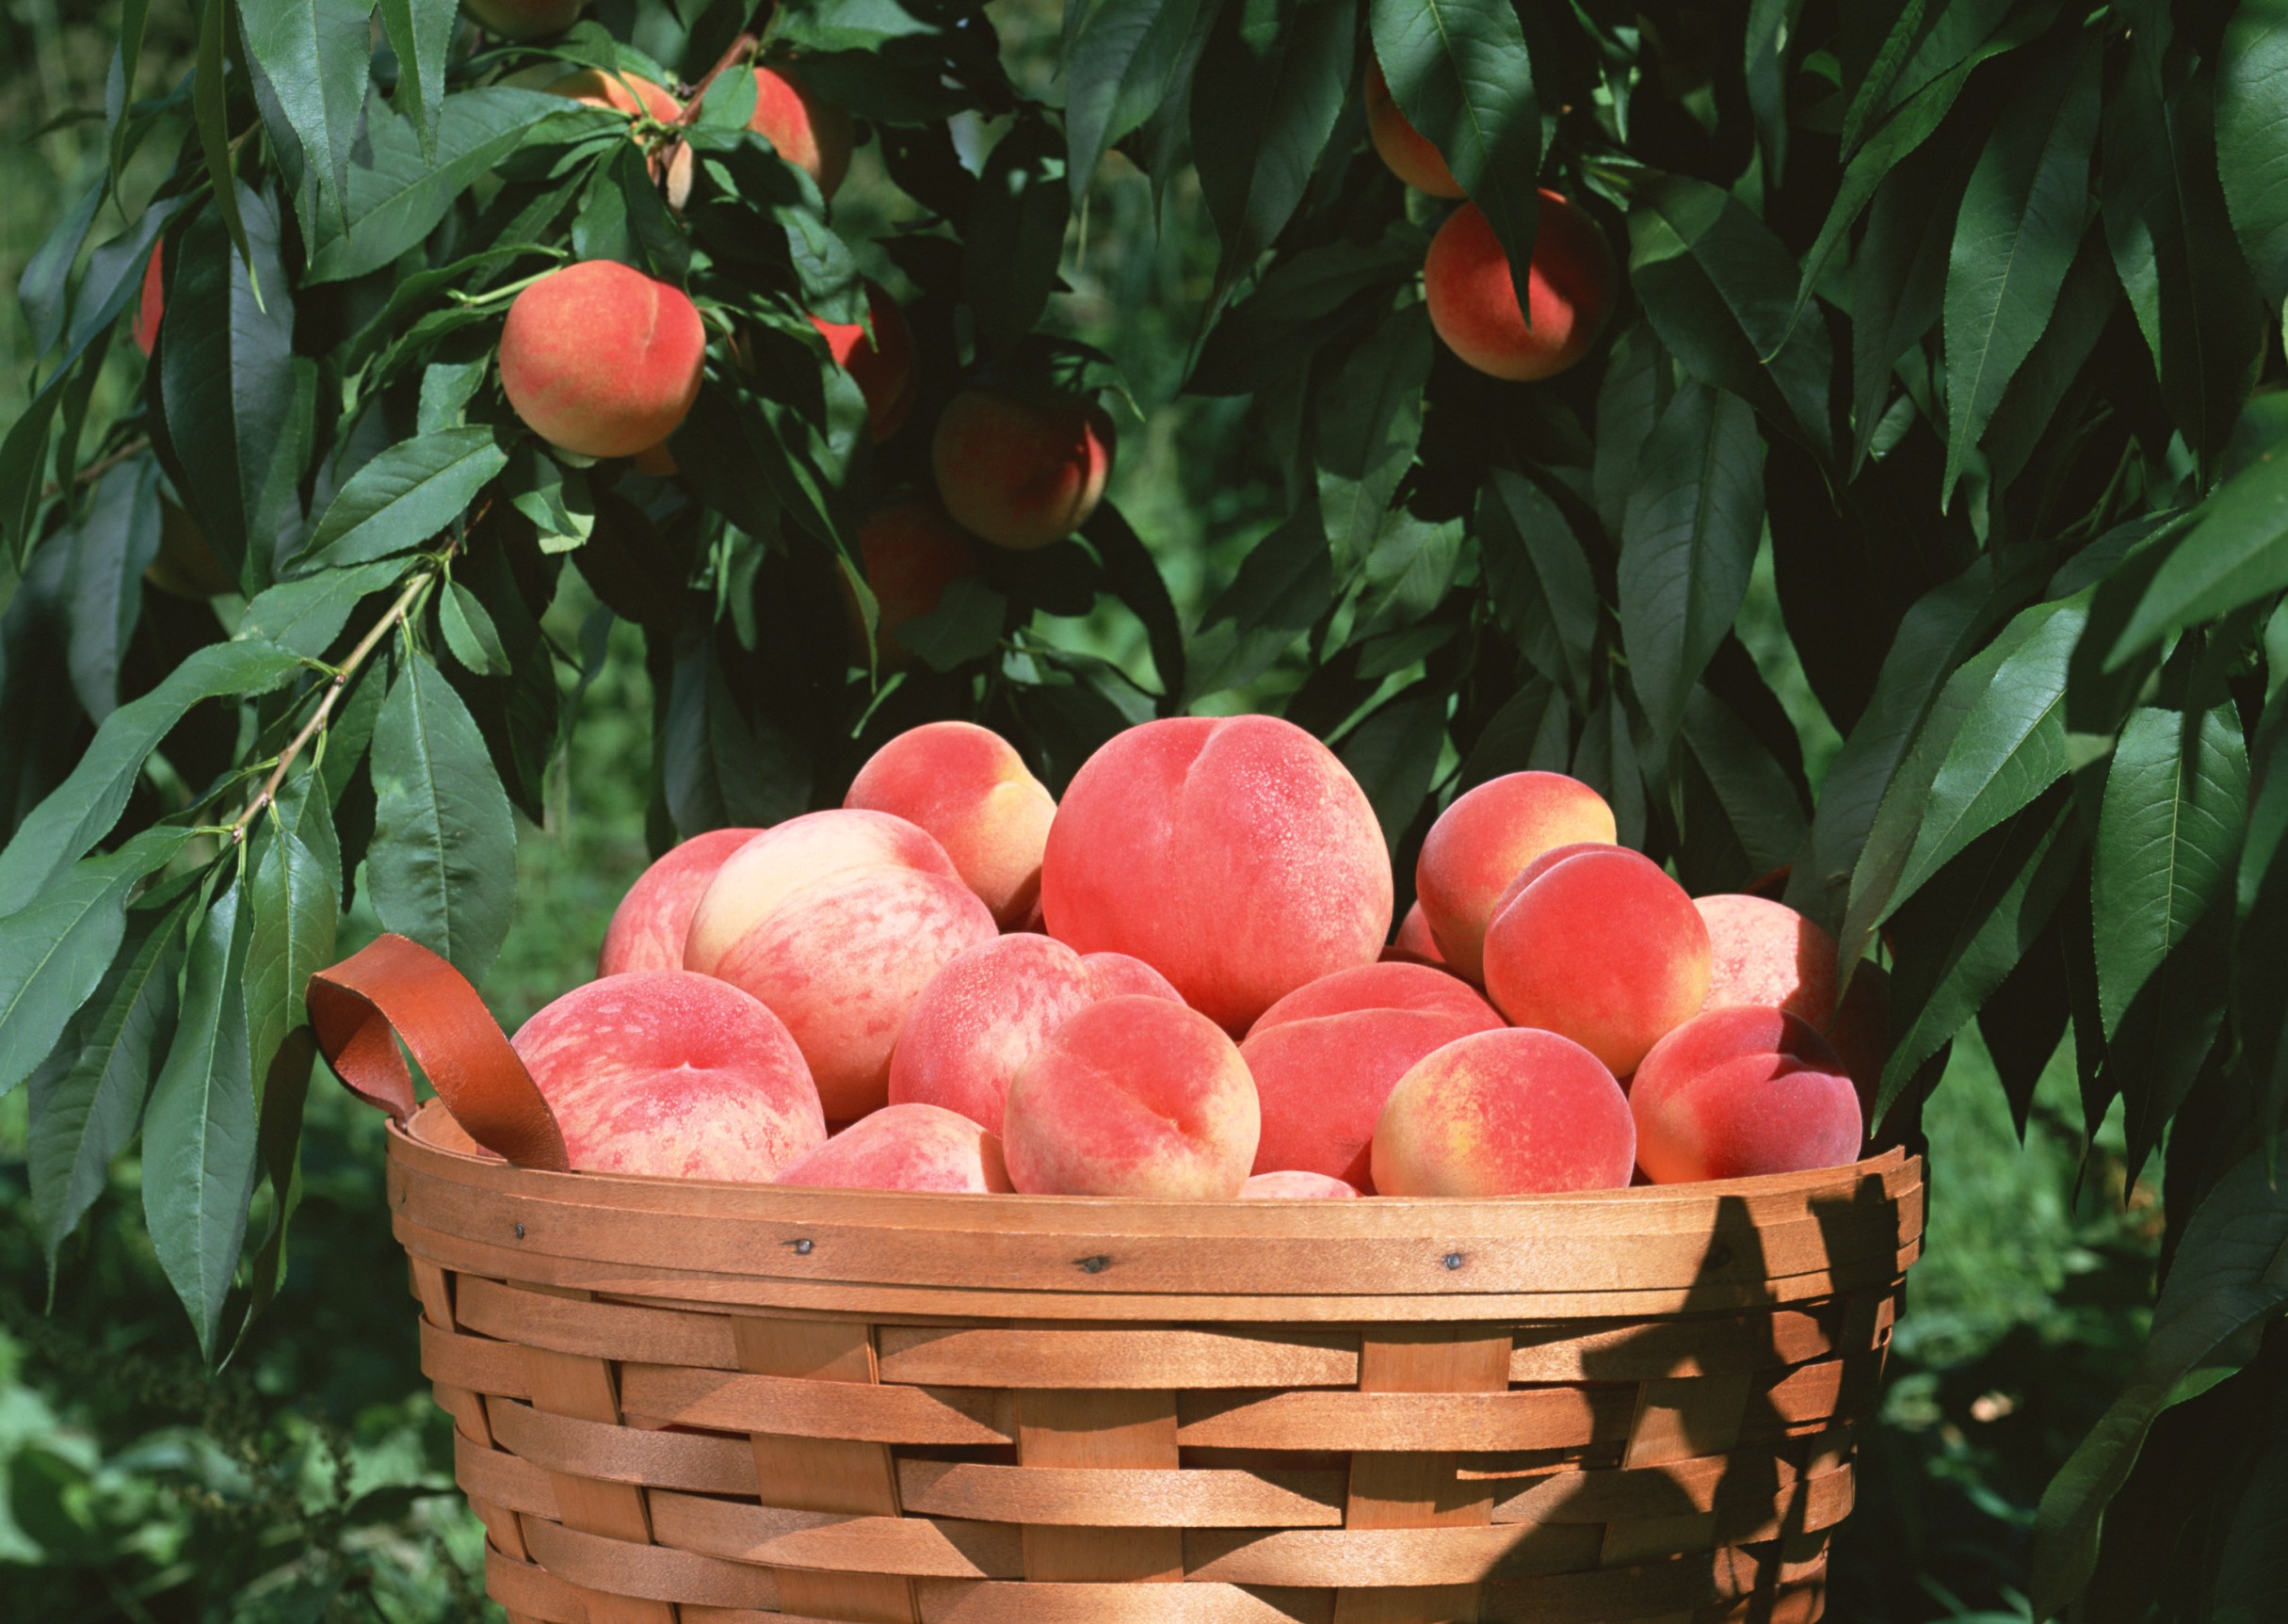 8月に入り、本格的な暑さになってきましたね☀️この季節になると、桃を使った可愛いらしいデザートをよく目にします！桃はジューシーで、皮をむく前からふわっと甘い香りが広がりますね！私も桃は大好きです?桃といえば、桃の節句や昔話の桃太郎など…桃のつく言葉は色々とありますね。桃の原産は中国といわれ、日本でも弥生時代から身近に食べられる果物だったようです。中国には、桃を食べた仙人が不老不死となった説話から「仙果」とも呼ばれ、花や葉、枝にも邪気を払う効果があると考えられてきました。今でも中国では、祝いの席に「桃まんじゅう」が並びます。風水でも、桃・橘・柘榴は「三柑の実」と呼ばれ、幸運を呼ぶ果物とされているそうです！桃の節句も桃太郎も、邪気を払うという意味から、桃にあやかっているようです。なんと桃は全国で100以上の品種が栽培されています。桃には大きく分けて３つの種類があり、甘みの強い「白桃系」、果肉がしっかりとした「白凰系」、果肉が黄色く主に缶詰などに使われる「黄桃系」に分けられます。桃の収穫時期は早生、中生、晩生の3つに分けられ、早生のものは5月頃から晩生のものは9月頃まで収穫することができます。白鳳系と白桃系の大きな違いは時期です。白凰系が先に出回り、約１ヵ月ずれて白桃系が出回ります。白桃系は木になっている時間が長い分、白鳳系に比ると大玉で甘味も強くなるのです！ここからは桃の栄養価について見ていきましょう♪桃は果物の中でも特に甘味が強いですよね！桃の主成分は果糖です。なんとこの果糖は砂糖の主成分であるスクロースの1.5倍の甘味があるのです。これが甘さの理由なんですね！果糖は単糖類なので、体内で代謝の過程を経ずにエネルギーとなり、即効性の疲労回復効果が期待できます。暑い夏にはぴったりですね！果糖の他にも、ビタミンCやビタミンE、ナイアシン、カリウム、ペクチンなどが豊富に含まれているのです。少し詳しく見ていきましょう♪桃に含まれるペクチンは水溶性食物繊維であるので、水分保持能力が強く、小腸での栄養素の消化吸収を抑えて遅らせます。ペクチンは、腸内の善玉菌を増やし腸内環境を整える働きや、腸のぜん動運動を促す働きがあり、便秘や下痢の改善に効果が期待できます。また、桃100gあたりに約180mgものカリウムが含まれており、果物の中でもカリウムが多いのが特徴です。カリウムには、体内の余分なナトリウムを排出する働きがあります。水分バランスを均衡に保つ働きがあり、高血圧やむくみを予防する効果があると言われています。さらに、ビタミンEには抗酸化作用があり、細胞の酸化を抑制する働きがあります。「若返りビタミン」とも呼ばれ、老化や生活習慣病の原因となる活性酸素を減らすと言われています。ビタミンEは自らが酸化すると効力を失ってしまいますが、ビタミンCはその効力を再び活性化させることができるので、ビタミンEとビタミンCを一緒に摂取することで、ビタミンの相乗効果により、抗酸化作用の更なる向上が期待できます！ナイアシンはビタミンB群の一つで、糖質や脂質、たんぱく質をエネルギーに変換するときに働きます。また、アルコールが腸で吸収された後、血液によって肝臓まで運ばれ分解されるときにアルコールを分解する酵素の補酵素として働くので、二日酔いを予防する効果が期待できます。飲み過ぎてしまった日にも良いですね！果物を食べる時に冷蔵庫で冷やしてから食べる方が多いと思います。なぜ冷やすのか考えたことはありますか？冷やすとひんやりとして美味しいですが、実は、冷やすことにより味にも変化が現れるのです！果物に含まれる果糖(フルクトース)にはα型とβ型があるのですが、β型の方が甘味が強く感じられます。低温になるとβ型が増加するため、より甘味が強くなります！これが果物を冷やすと甘くなる理由です。果物を食べる時は事前に冷やして、ひんやりと甘い果物を味わってみてください！桃といえば生食が一般的かもしれませんが、コンポートやケーキなどのデザートはもちろんのこと、桃の甘味や酸味を生かすことで、サラダやパスタなどのお料理にも活用できます！　ハンガリーには「フルーツスープ（Hideg Gyömölcs Leves）」という料理があります?夏の名物料理で、ハンガリー語で「Hideg（冷たい）Gyömölcs（フルーツ）Leves（スープ）」という意味があります。冷たいものが主流だそうです。フルーツスープはさまざまなフルーツを砂糖・シナモンやクローブなどのスパイスとともに煮込み、そこに生クリームやサワークリーム・牛乳などの乳製品が加えられたものです。フルーツとしてアプリコットやチェリー、桃などが一般的に使われるようです。フルーツスープはもちろん甘いですが、ハンガリーではデザートではなく食事として食べられているようです。甘酸っぱいフルーツスープは、暑い夏にはがぴったりなんだそうです！皆さんもぜひお試しください♪今年の夏も暑い日が続きそうですが、桃や果物を食べて、熱中症などには気をつけてお過ごしください。*:..｡o○☆*ﾟ¨ﾟﾟ･*:..｡o○☆*ﾟ¨ﾟﾟ･*:..｡o○☆･*:..｡o○☆*ﾟ¨ﾟﾟ･*:..｡o○☆*ﾟ¨ﾟﾟ･*:..｡o○住所：兵庫県芦屋市公光町4-20-303　　　株式会社然 （http://www.zenmarche.com/）http://fun-westjapan.com/【発行者】 fun実行委員会～栄養学生団体【fun】は、栄養士・管理栄養士養成コースの学生が社会や企業と コラボレーションしながら、社会で即戦力として通用する経験を積む場です。栄養士・管理栄養士を目指す大学生、専門学校生の就活にも有利です♪♪～･*:..｡o○☆*ﾟ¨ﾟﾟ･*:..｡o○☆*ﾟ¨ﾟﾟ･*:..｡o○☆･*:..｡o○☆*ﾟ¨ﾟﾟ･*:..｡o○☆*ﾟ¨ﾟﾟ･*:..｡